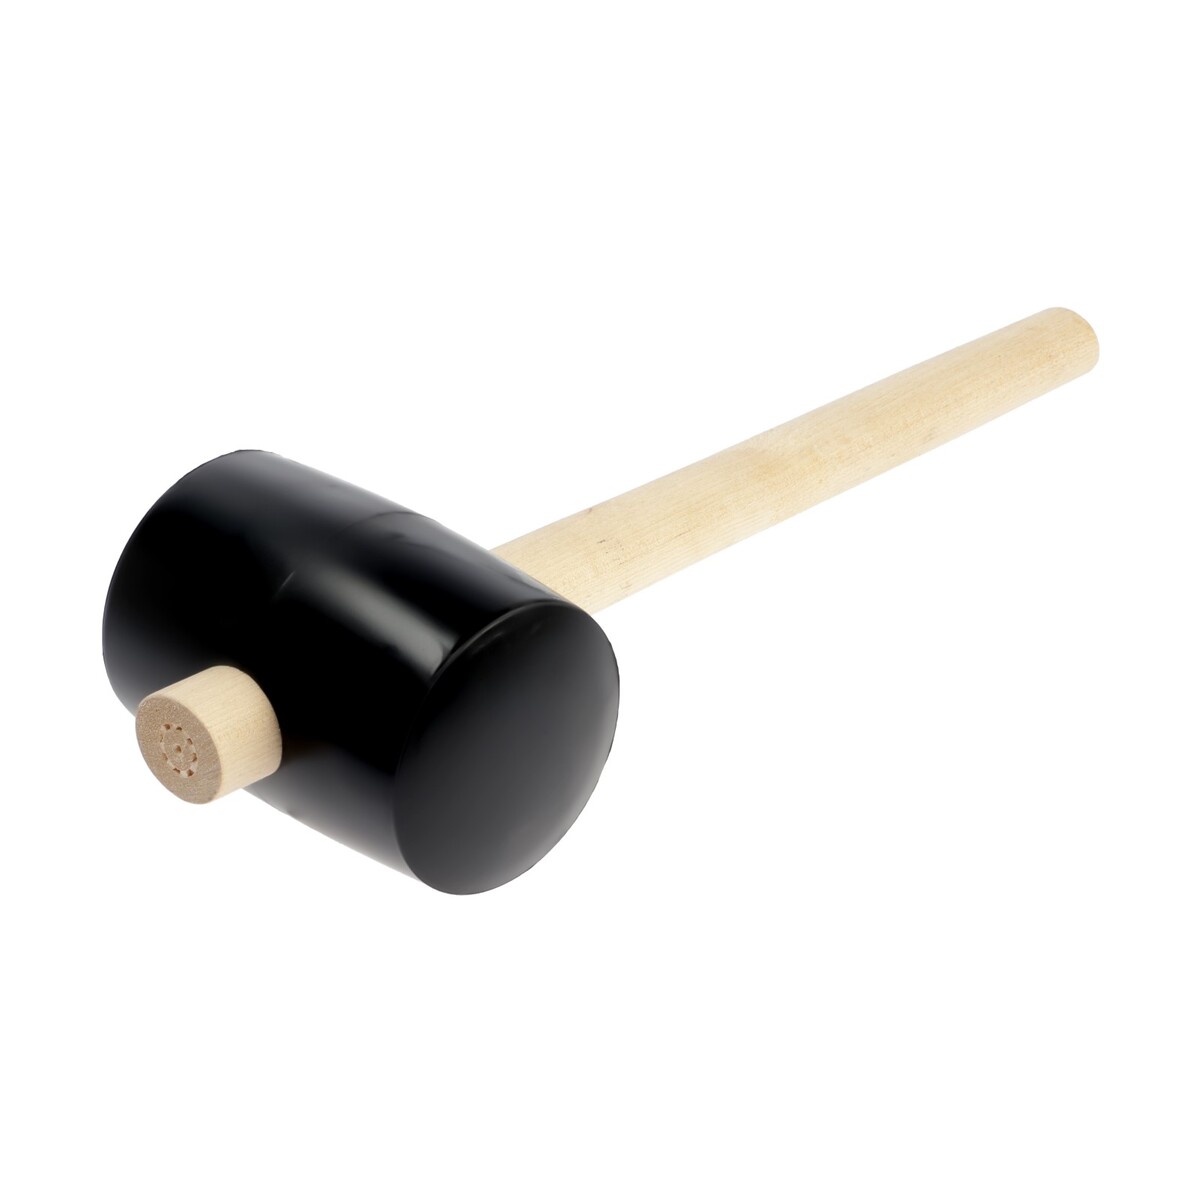 Киянка лом, деревянная рукоятка, черная резина, 90 мм, 1000 г киянка тундра деревянная рукоятка черная резина 900 г